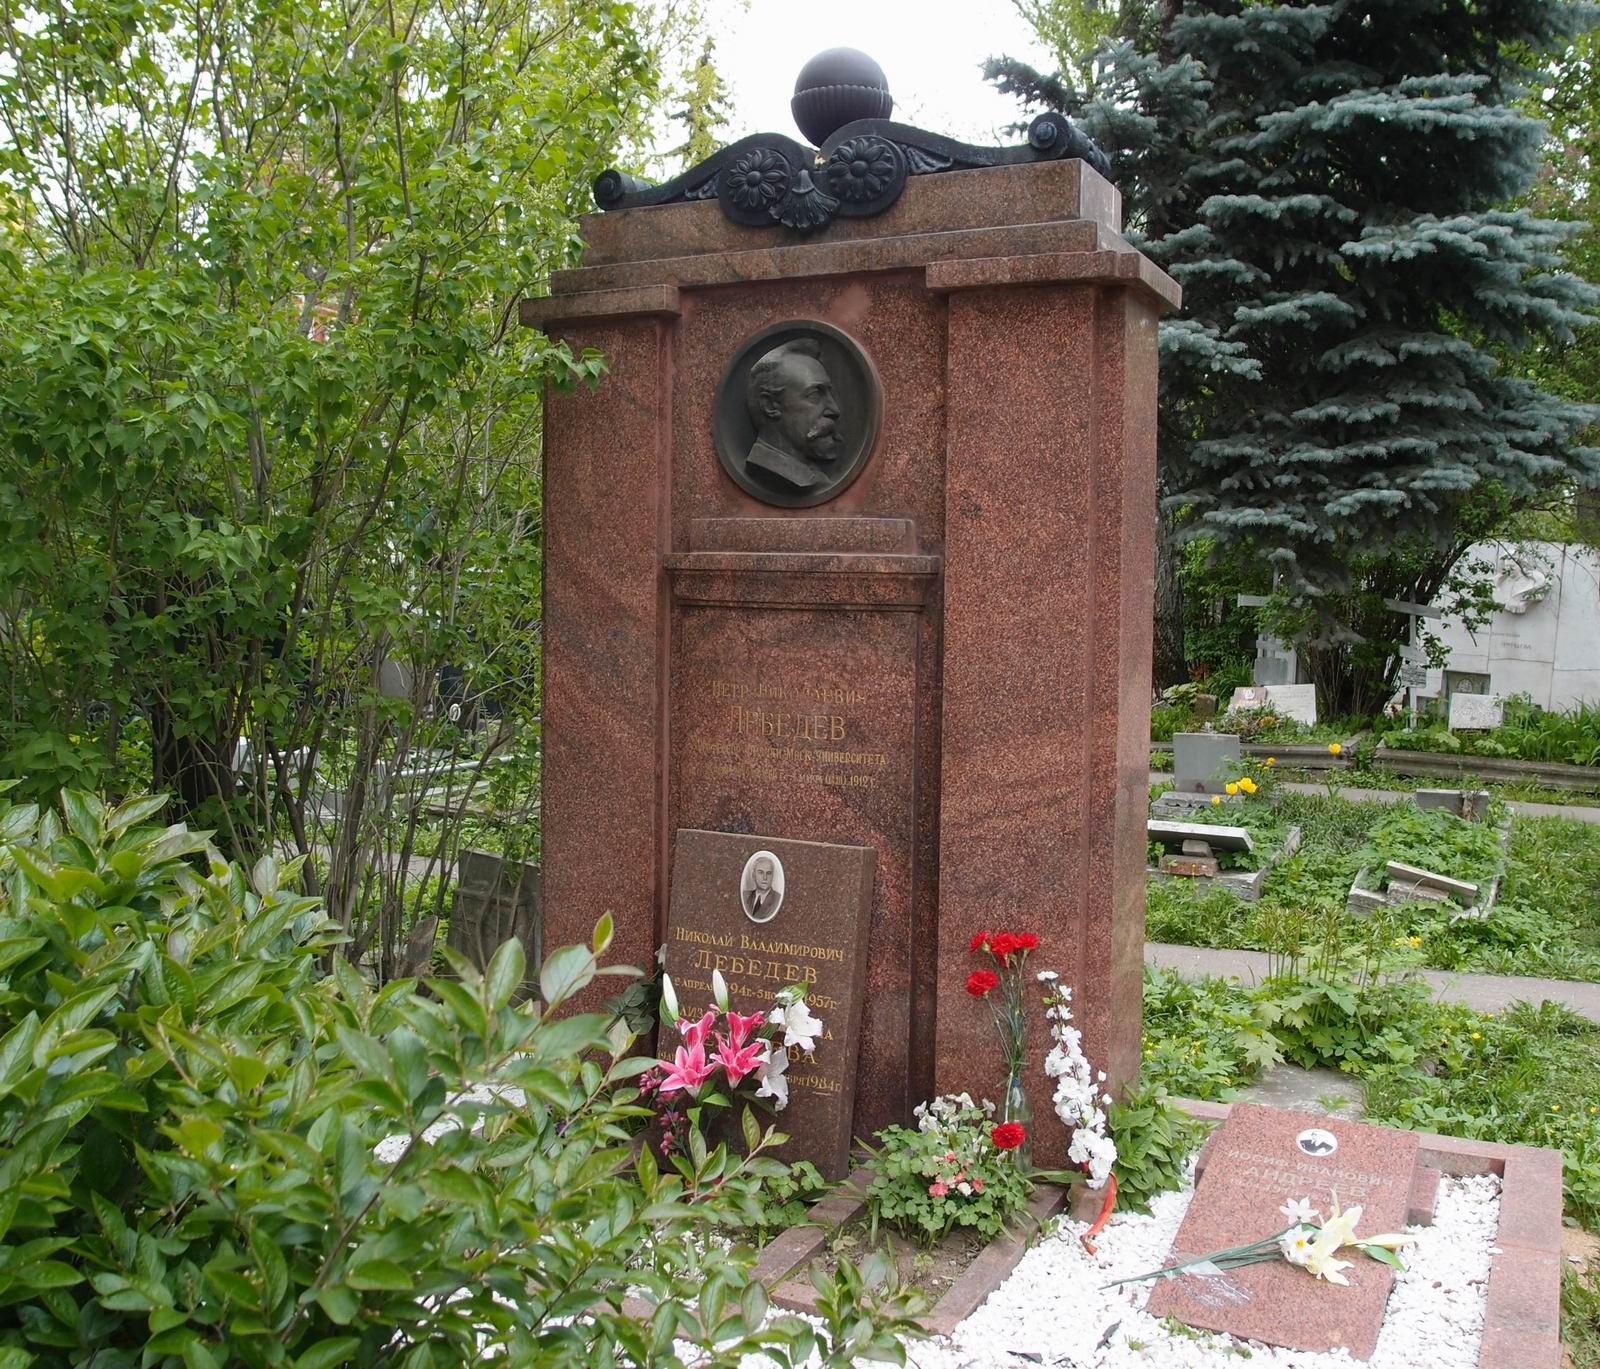 Памятник на могиле Лебедева П.Н. (1866-1912), ск. Н.Андреев, арх. А.Голубев, на Новодевичьем кладбище (3-20-1). Нажмите левую кнопку мыши чтобы увидеть фрагмент памятника крупно.